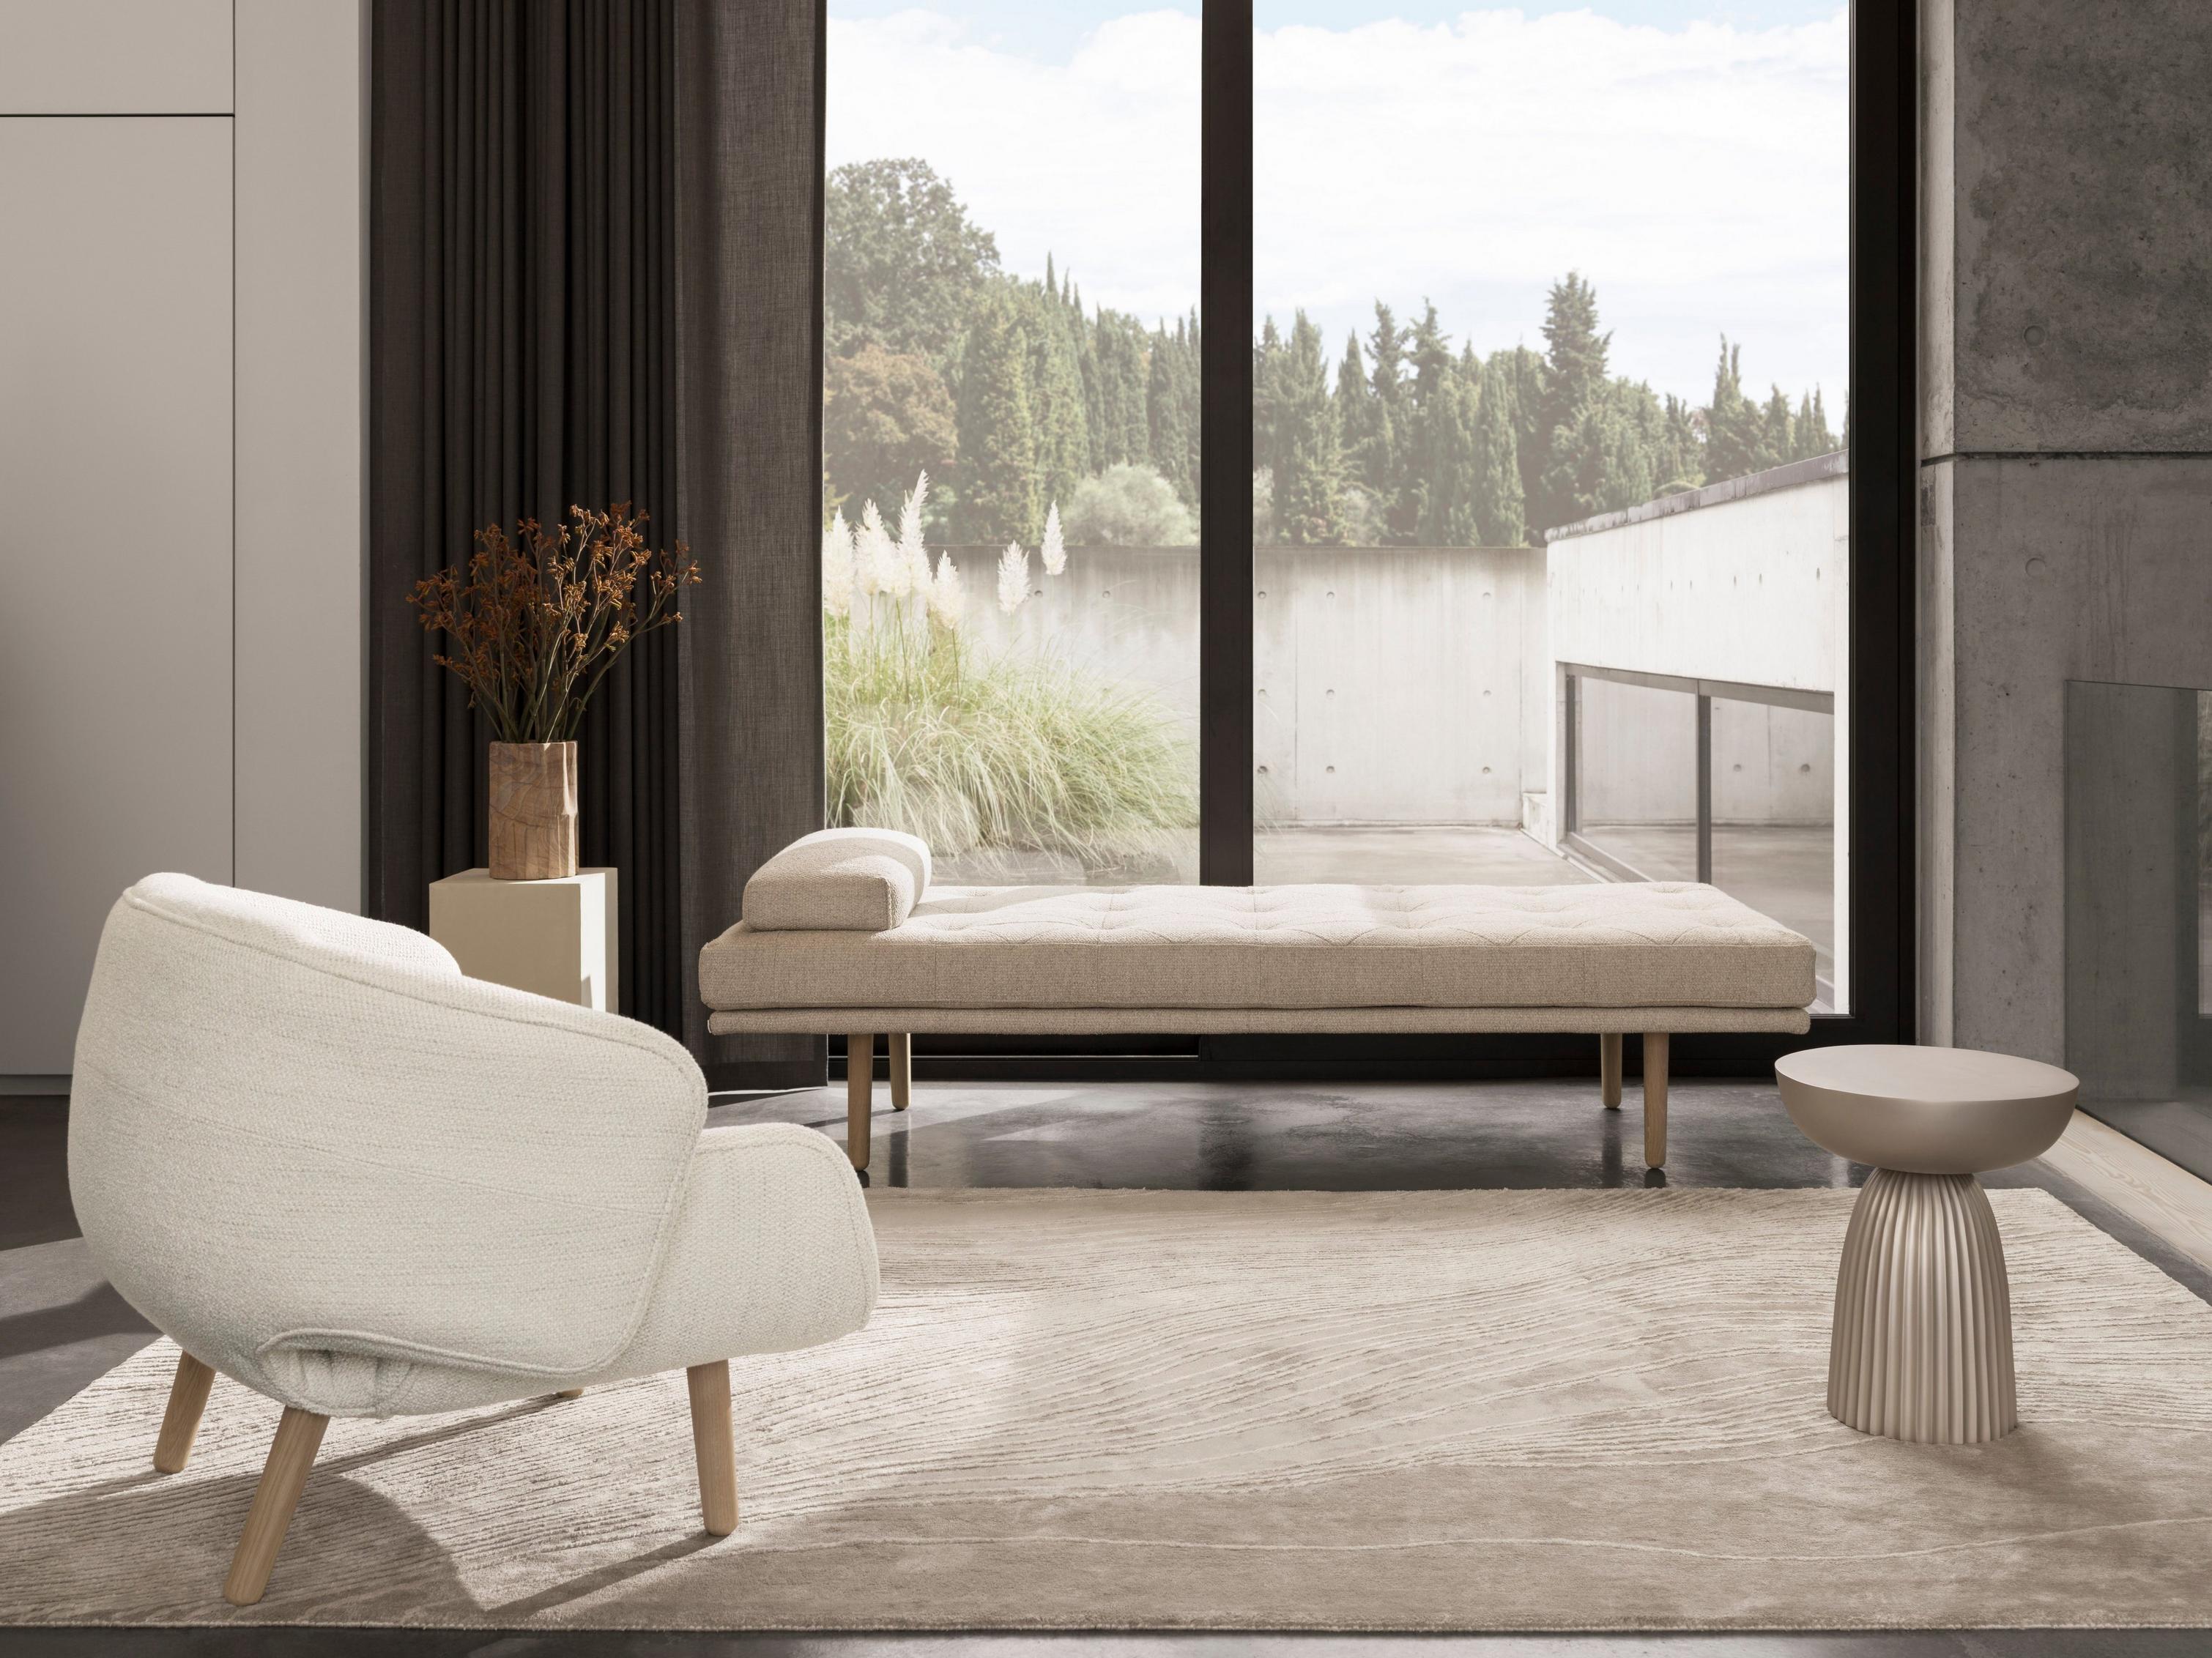 Minimalistische woonruimte met het fusion sofabed in beige Lazio stof.